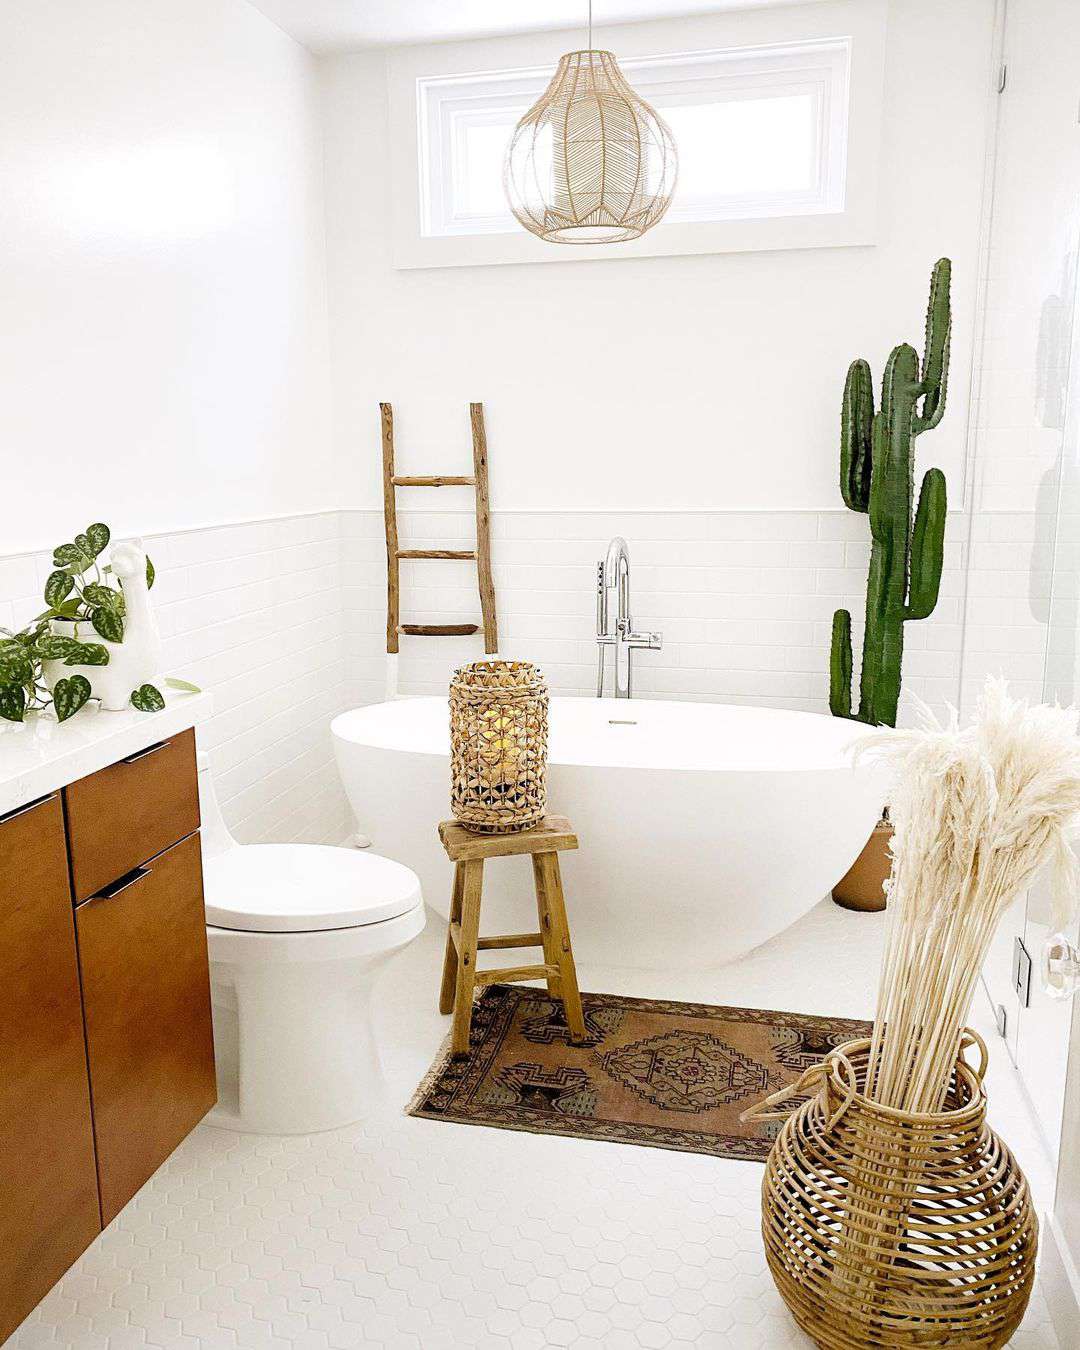 Décor de cactus dans une salle de bain